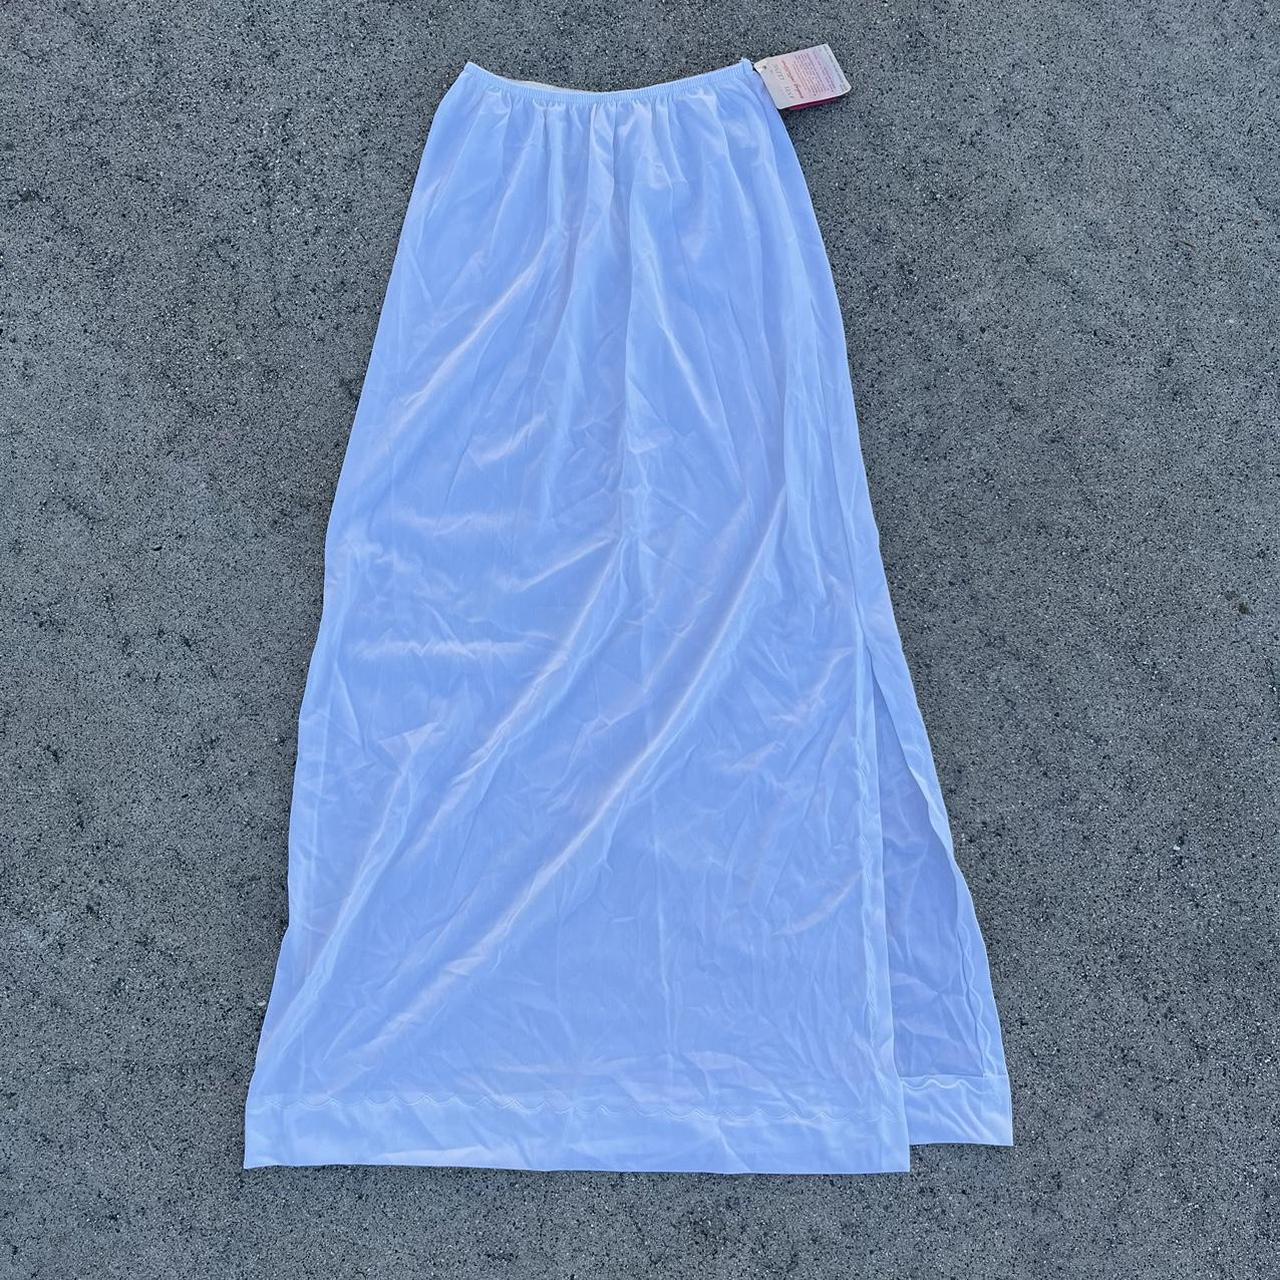 Cream slip skirt~ Made with nylon fabric, very - Depop